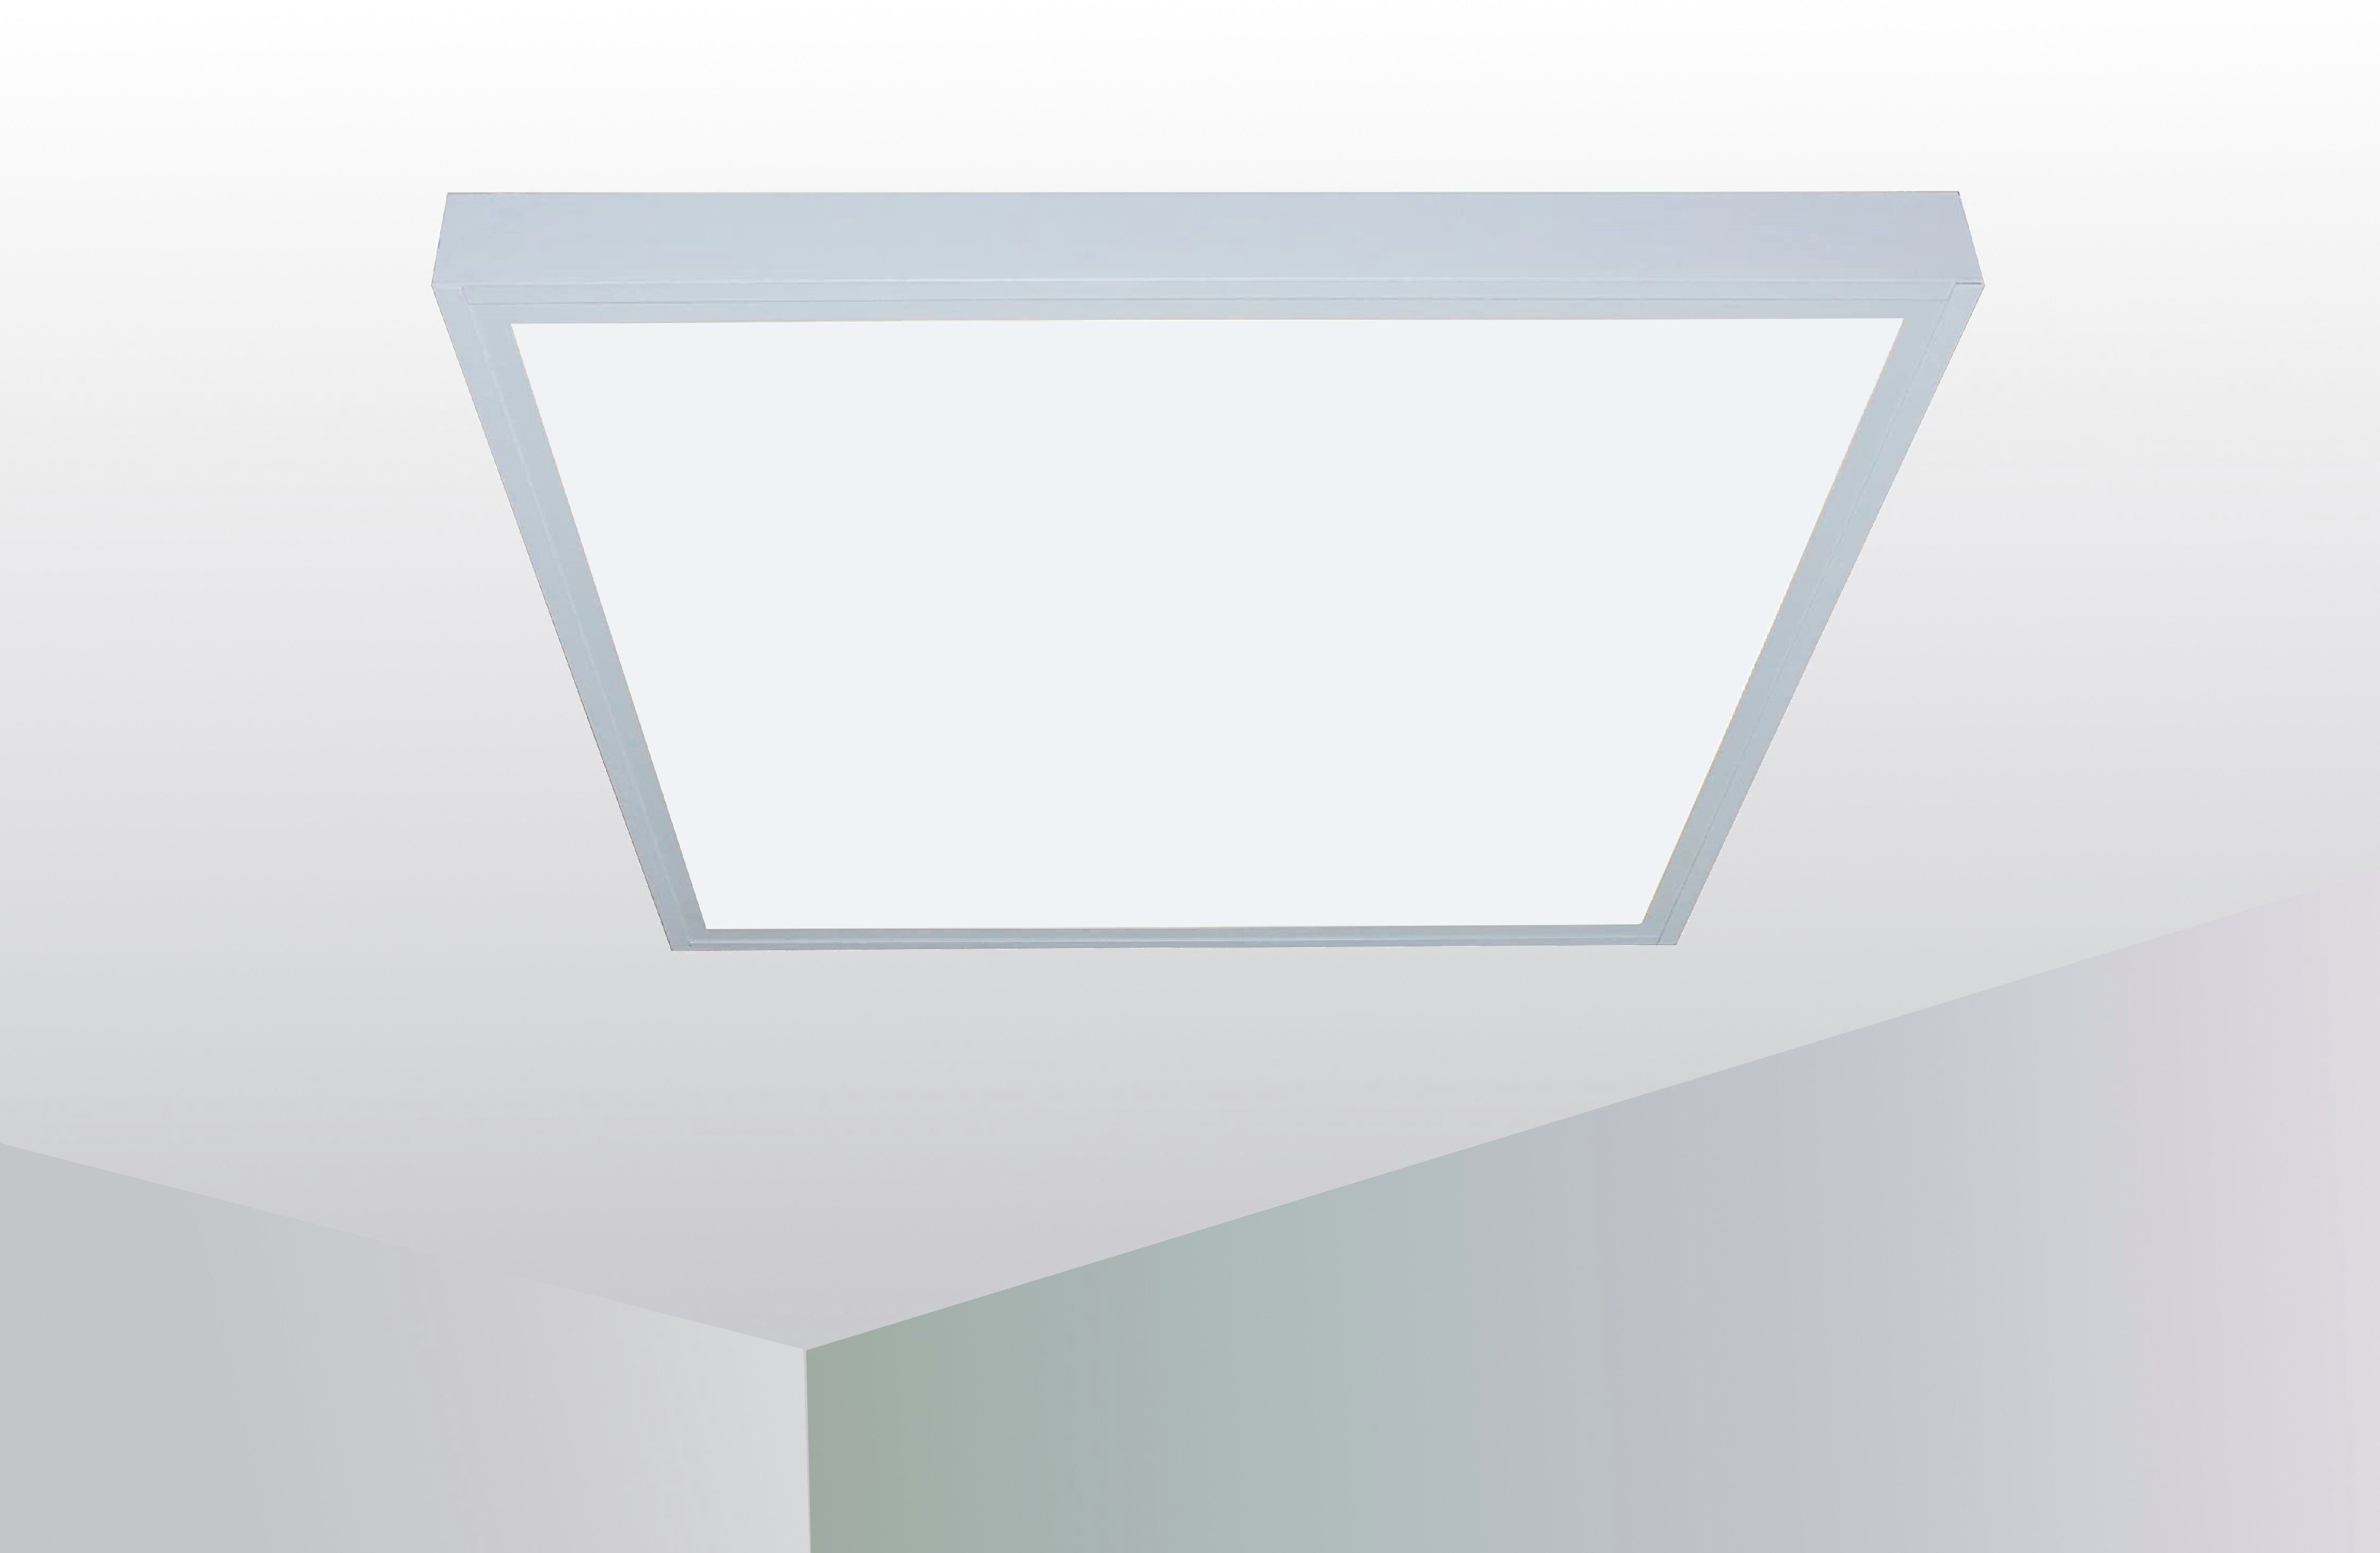 LED Panel Deckenleuchte Deckenlampe Flach 62x62 Leuchtmittel Aluminium weiß matt